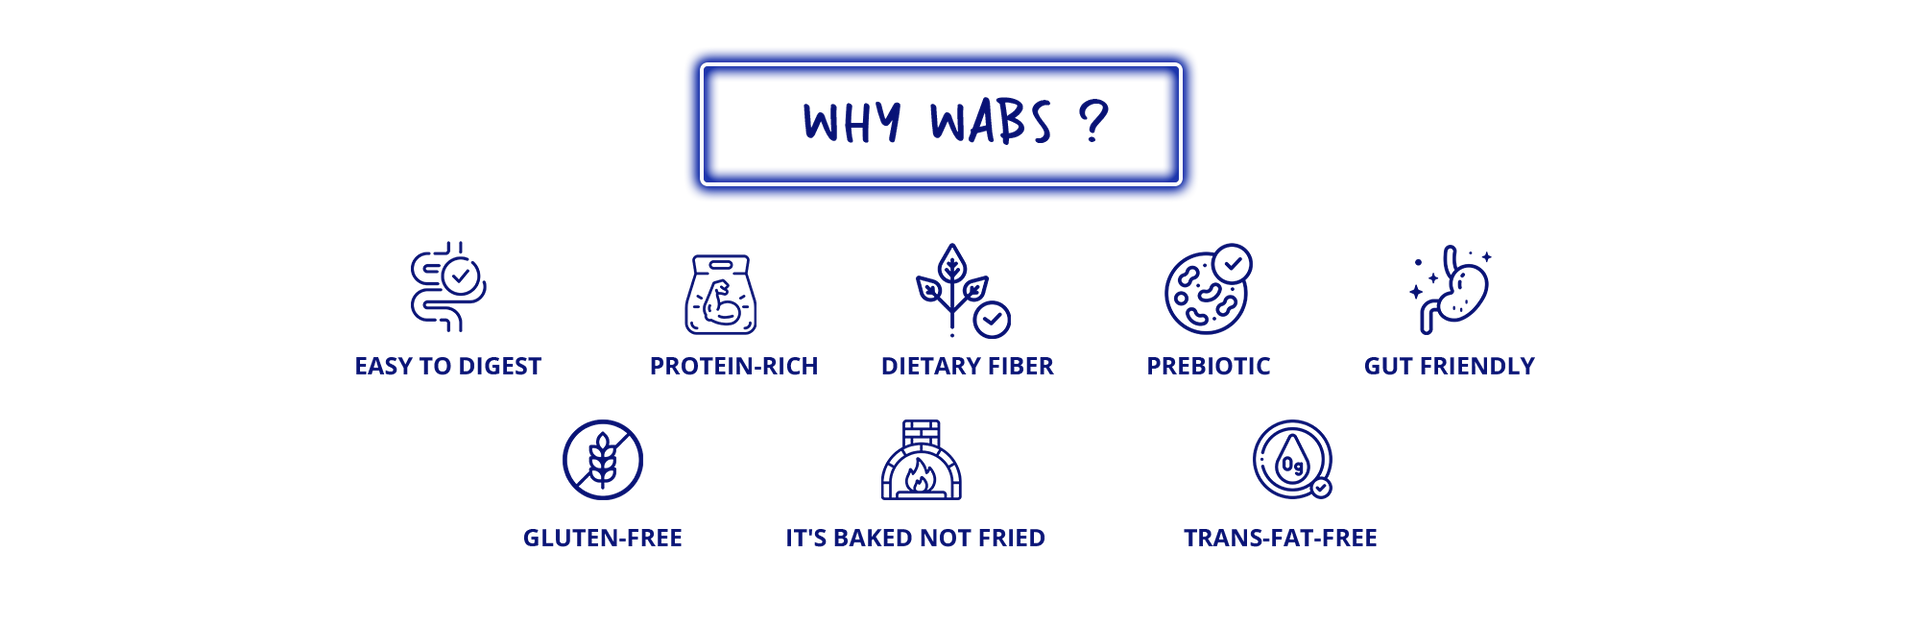 why-waps